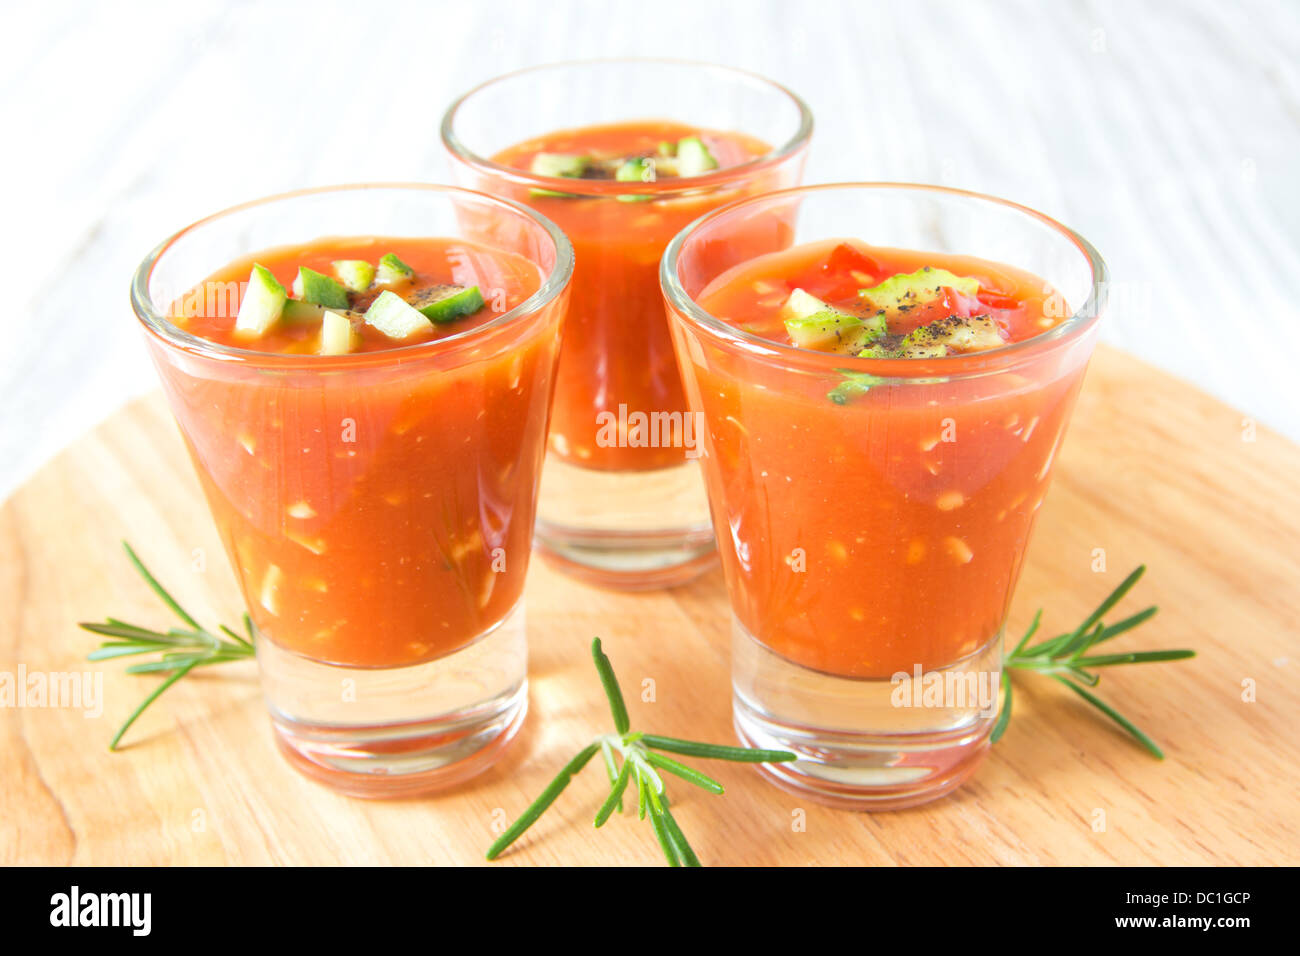 Delizioso freddo gustosa minestra di pomodoro gazpacho nella porzione bicchieri sulla tavola di legno, primo piano, orizzontale Foto Stock